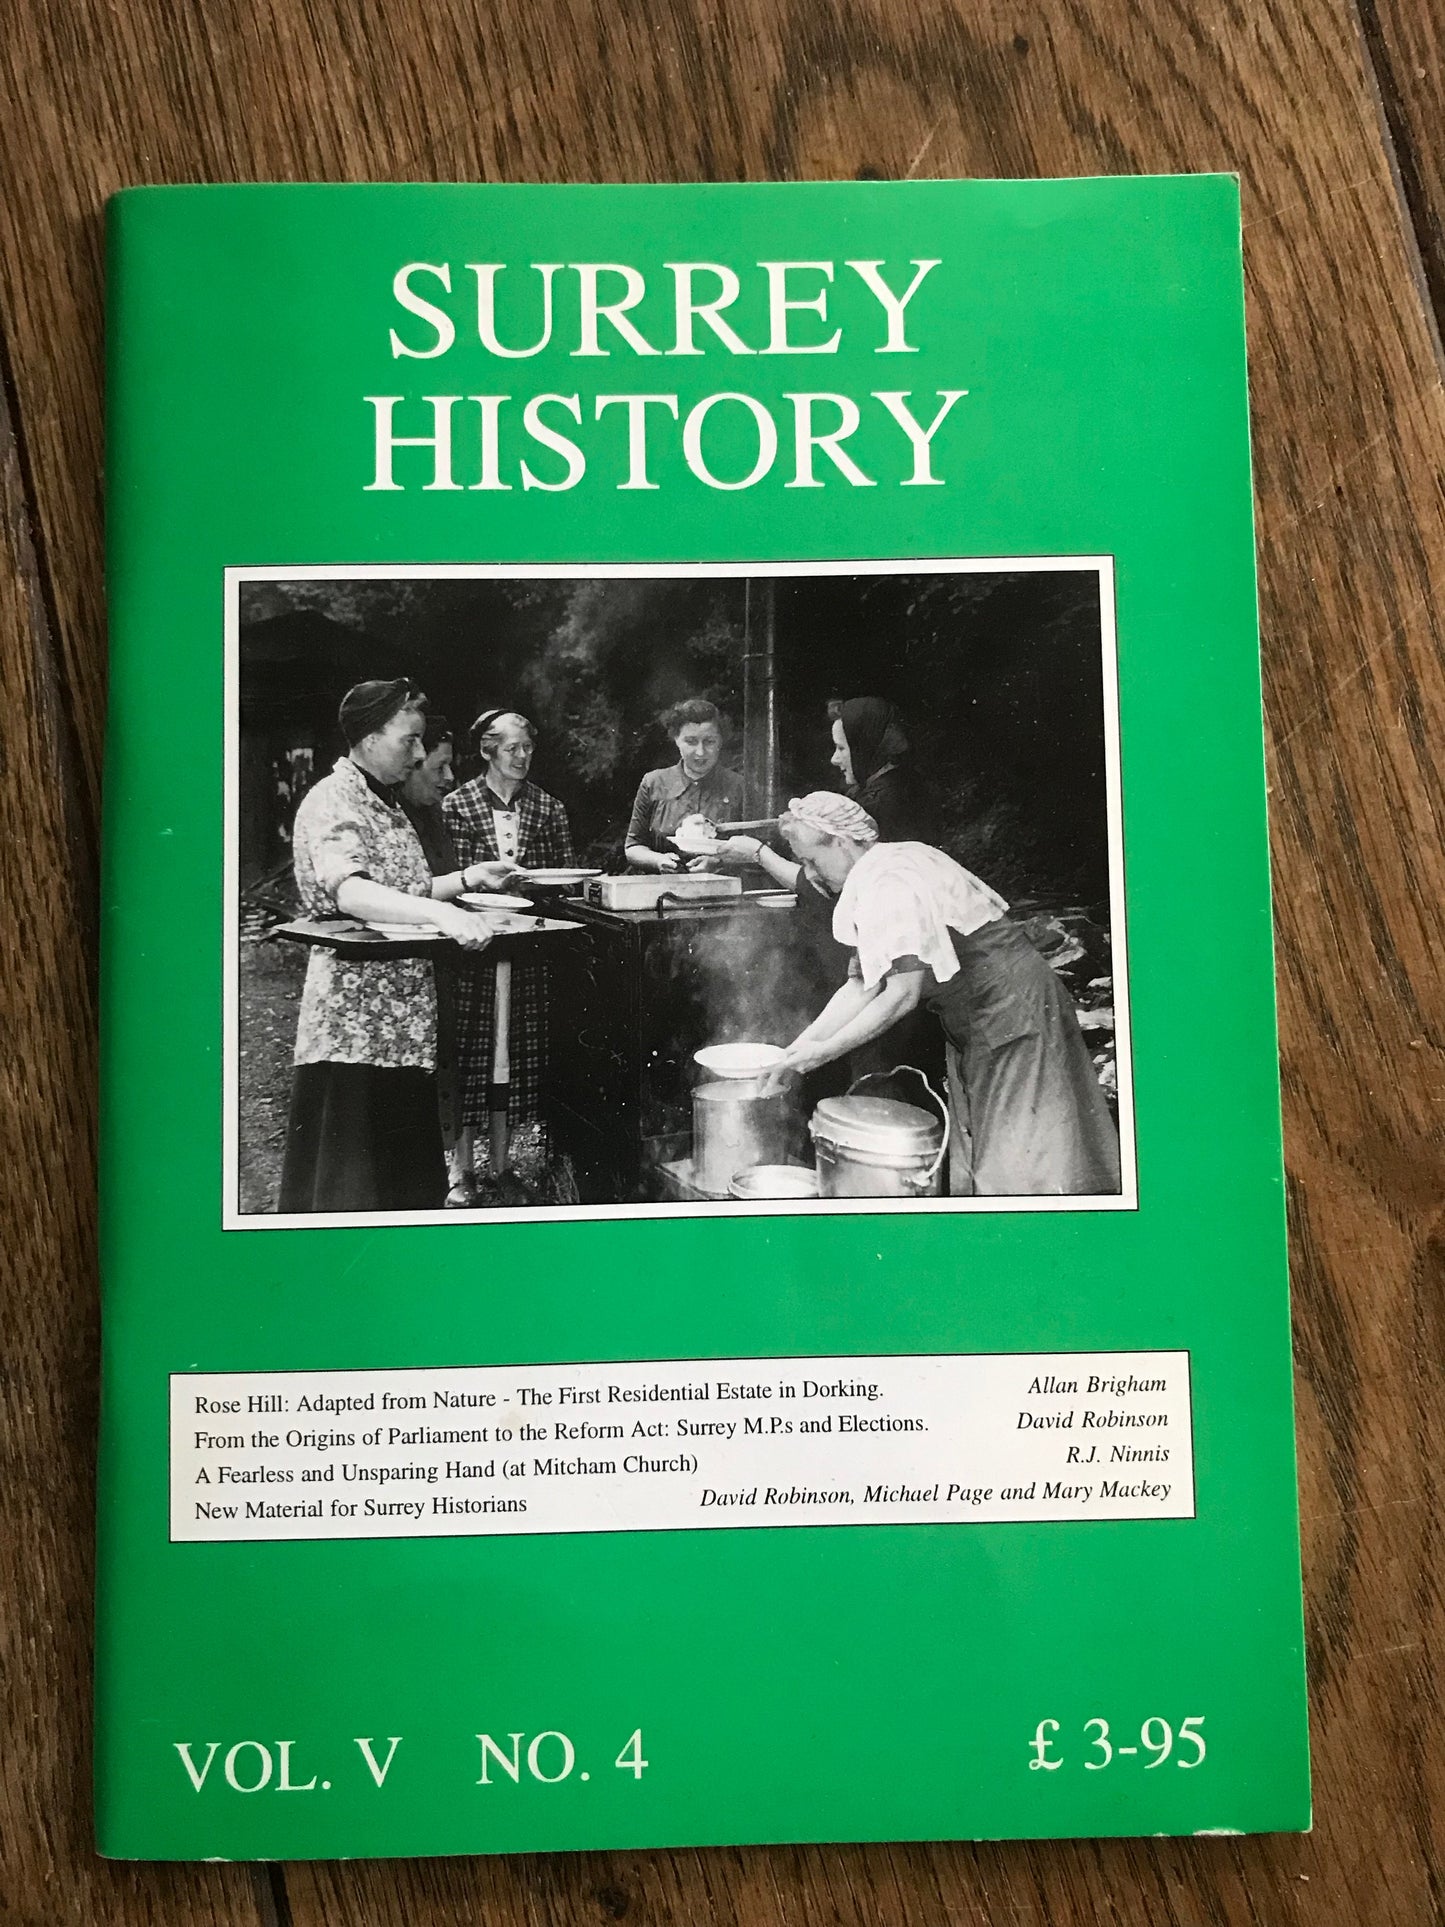 Surrey History Vol. V No. 4